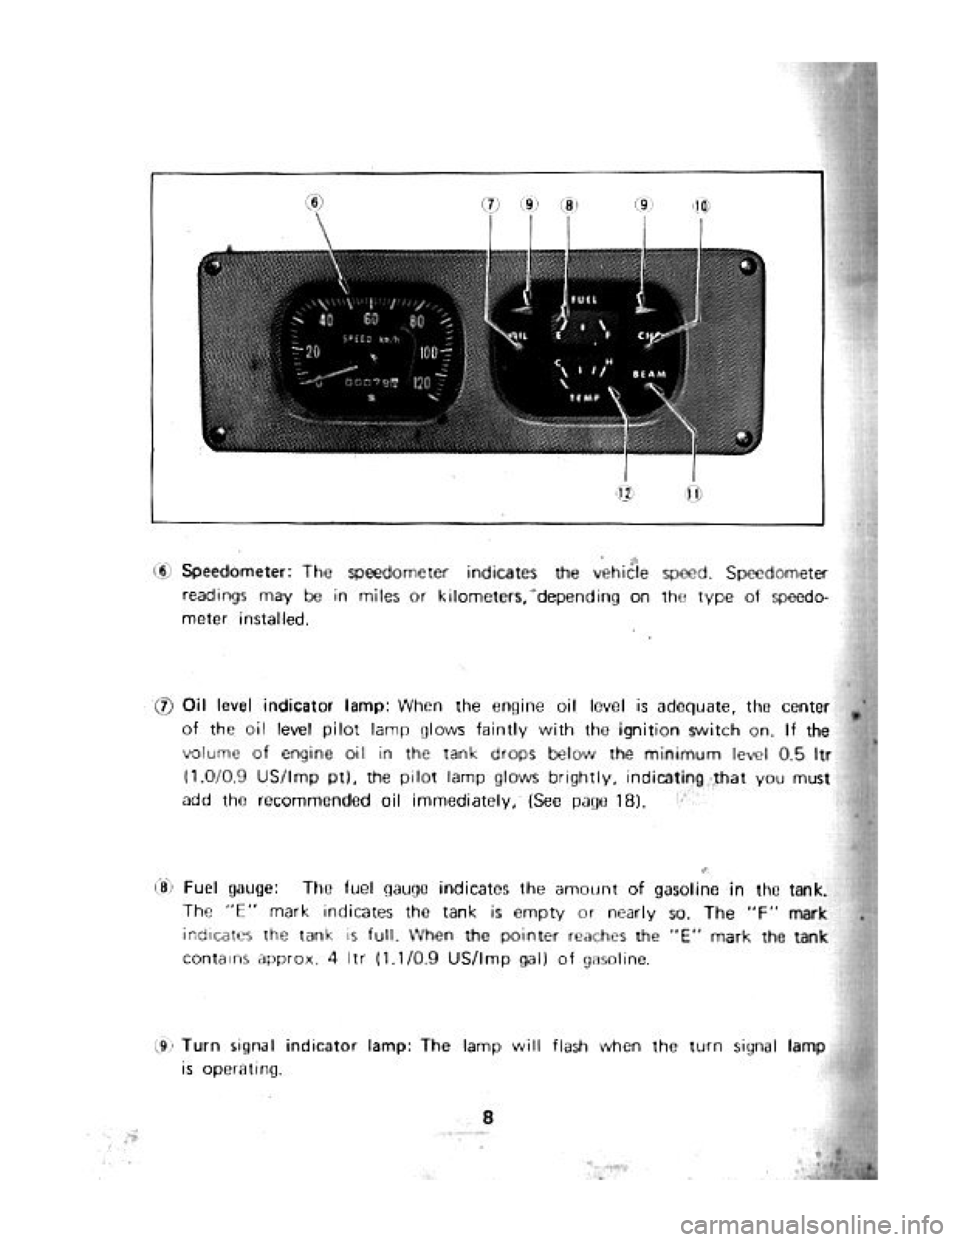 SUZUKI LJ20 1975 1.G Owners Manual 